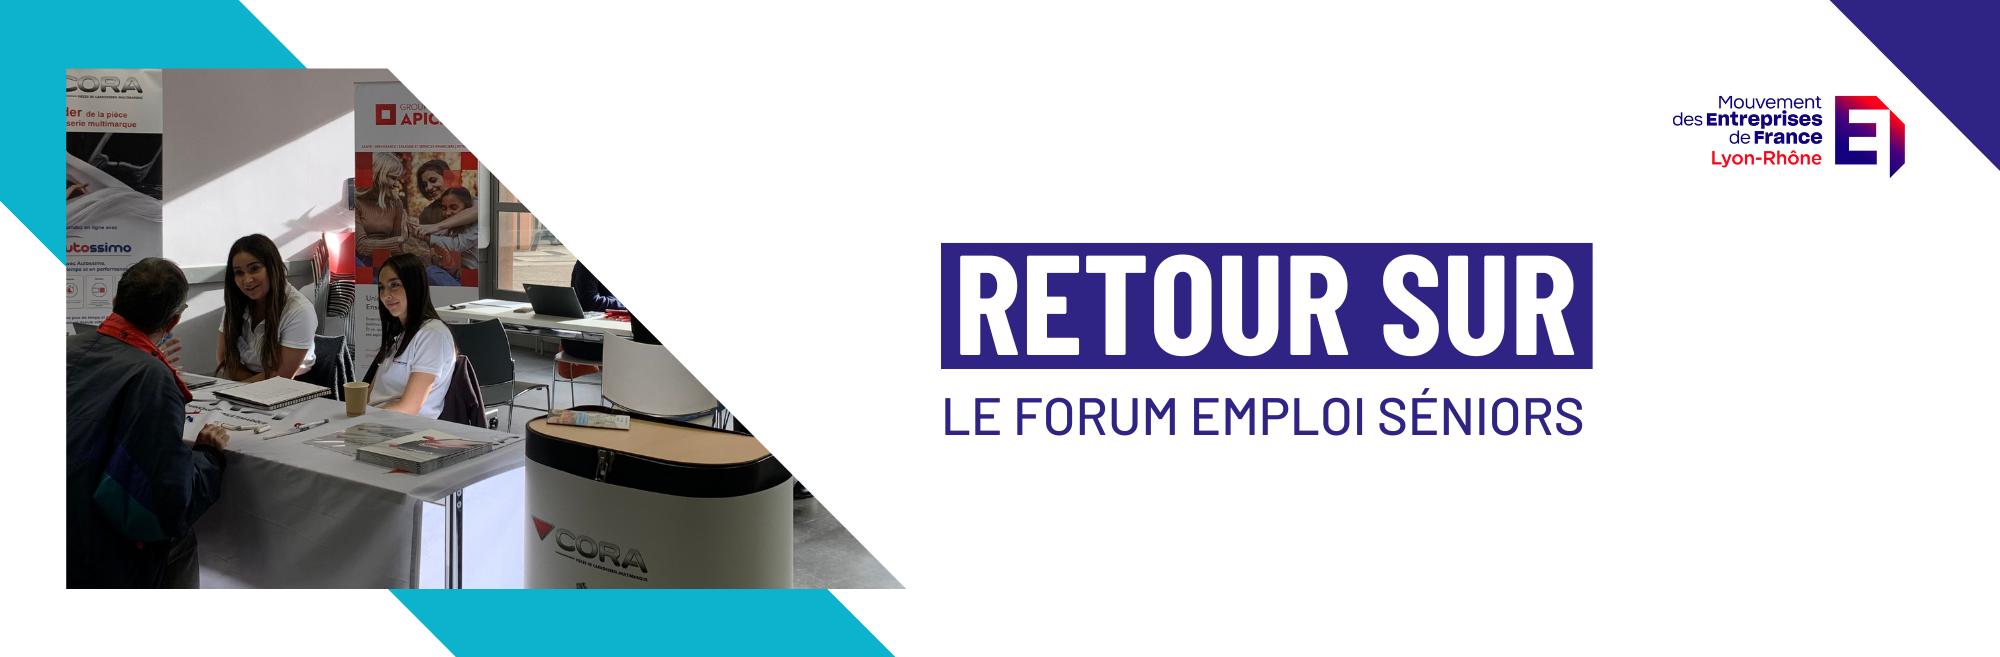 Forum Emploi Séniors MEDEF Lyon Rhône